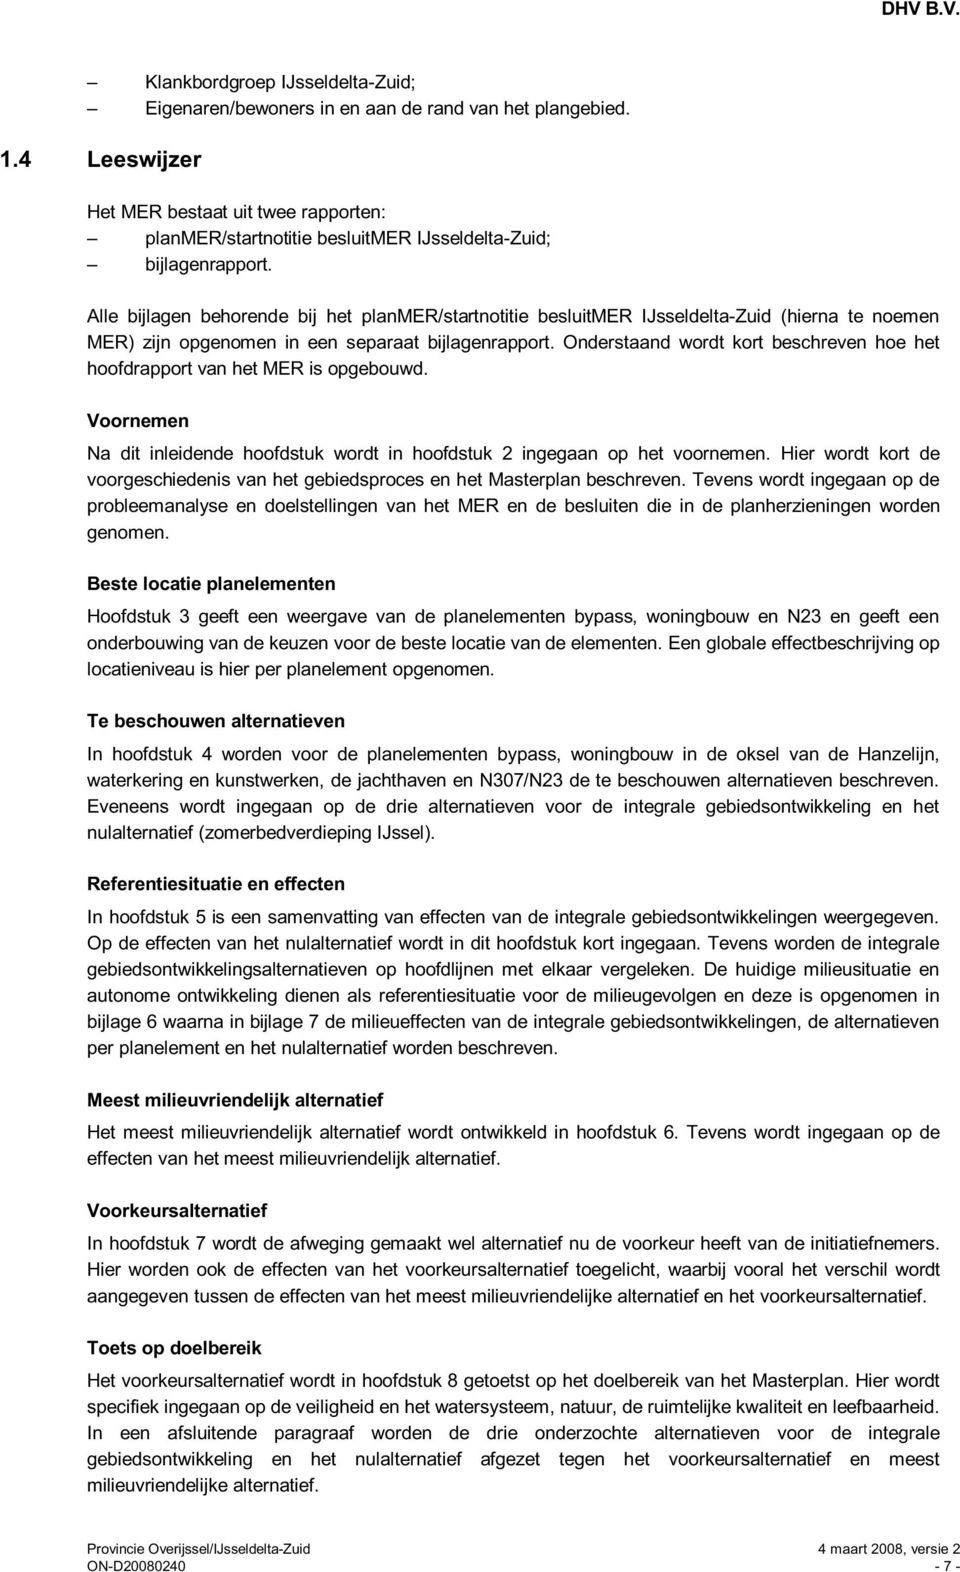 Alle bijlagen behorende bij het planmer/startnotitie besluitmer IJsseldelta-Zuid (hierna te noemen MER) zijn opgenomen in een separaat bijlagenrapport.